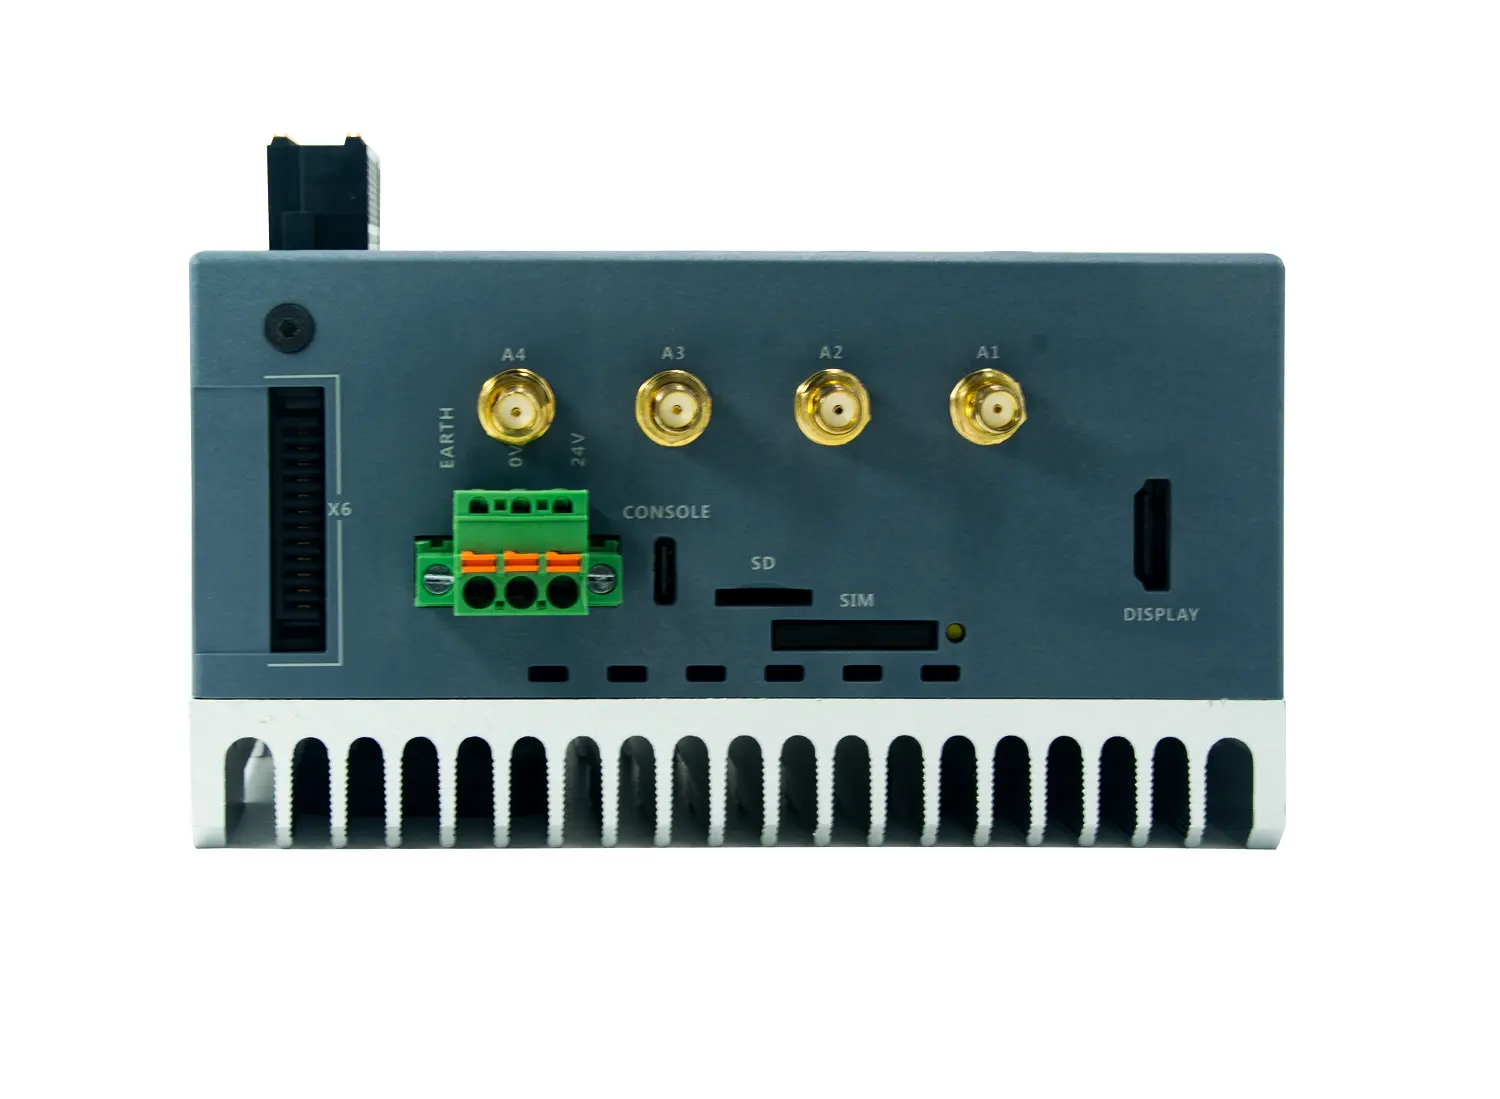 L'applicazione dei sistemi DI controllo e DI automazione con RJ45, HDMI, DI, DO, RS232, può BUS